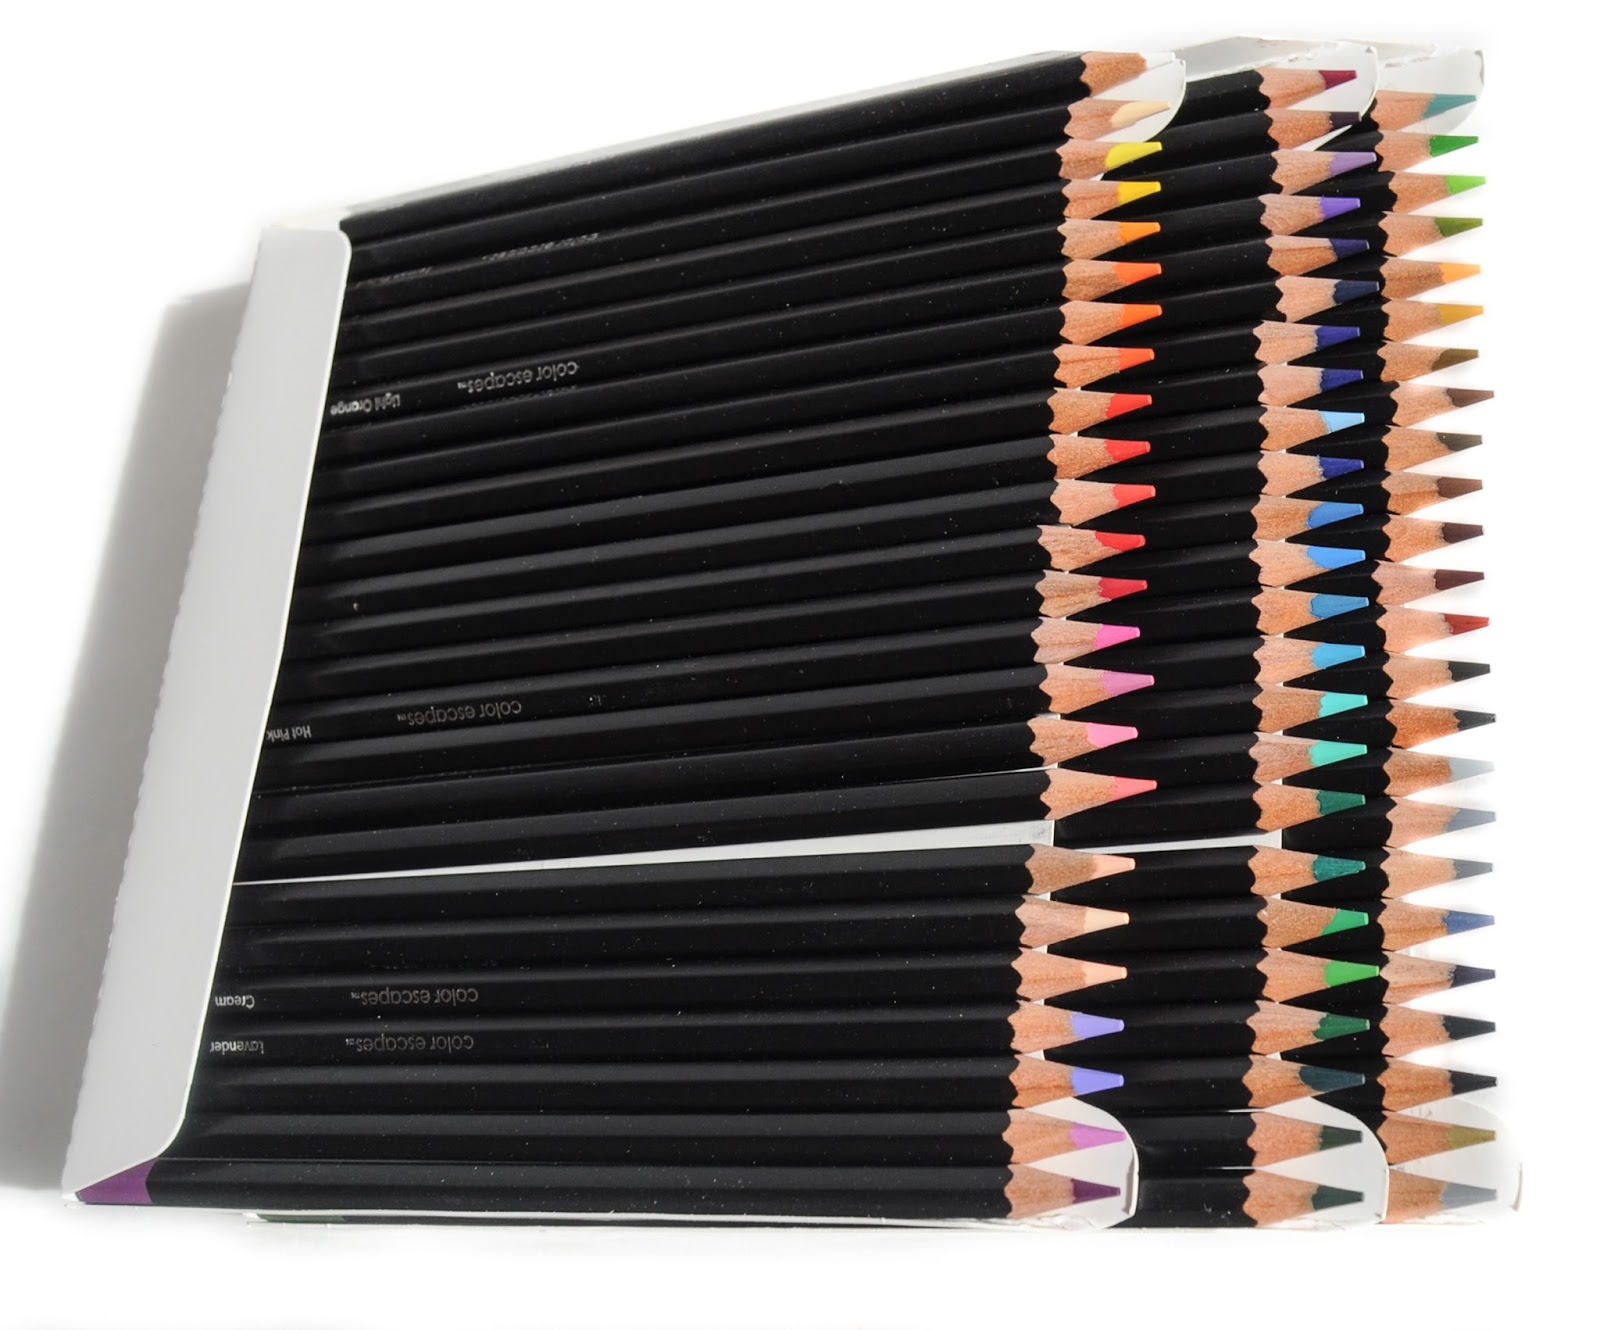 Crayola Color Escapes Colored Pencils Review